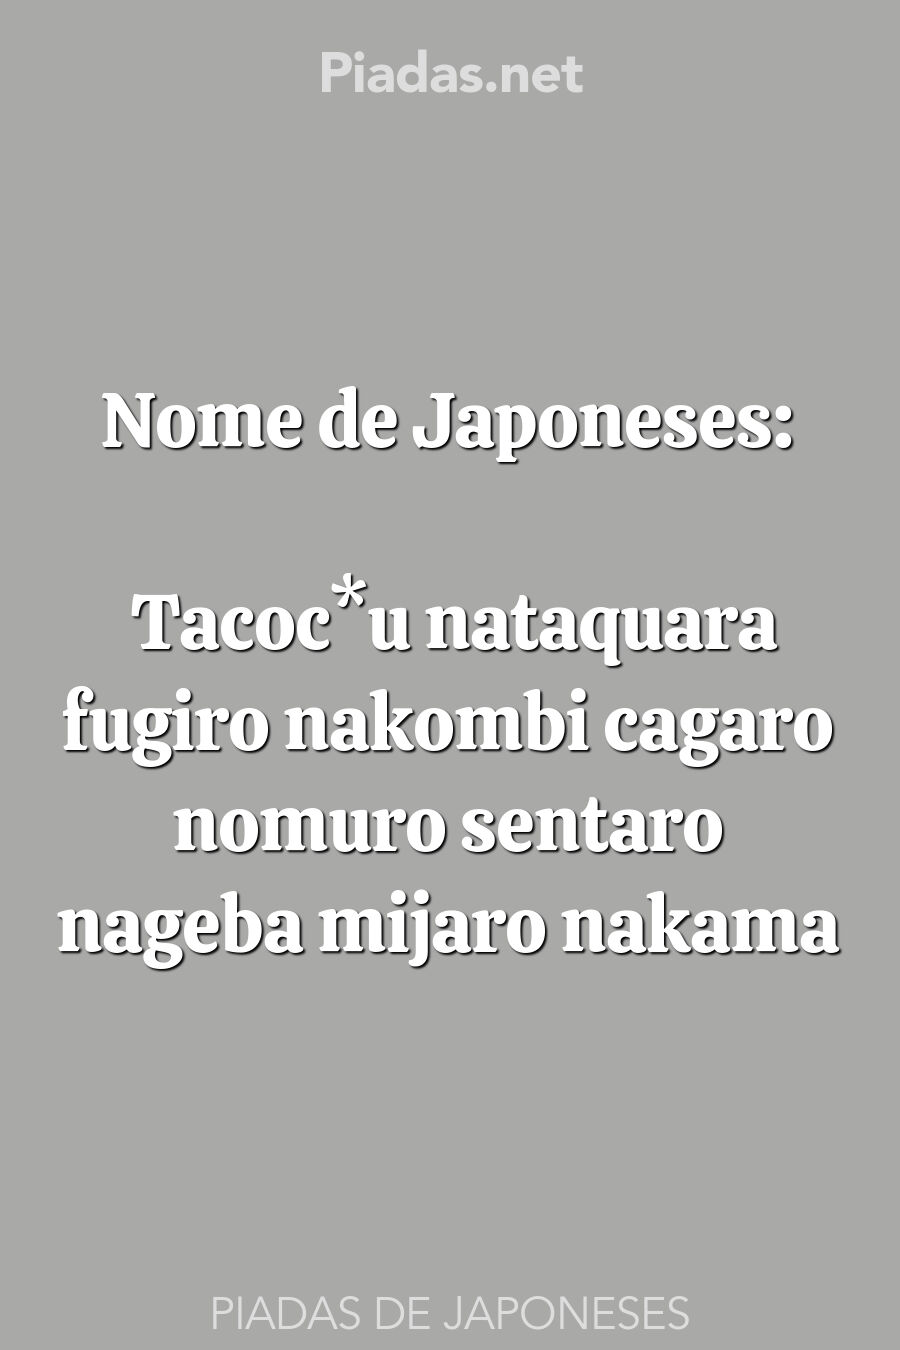 japoneses piadas